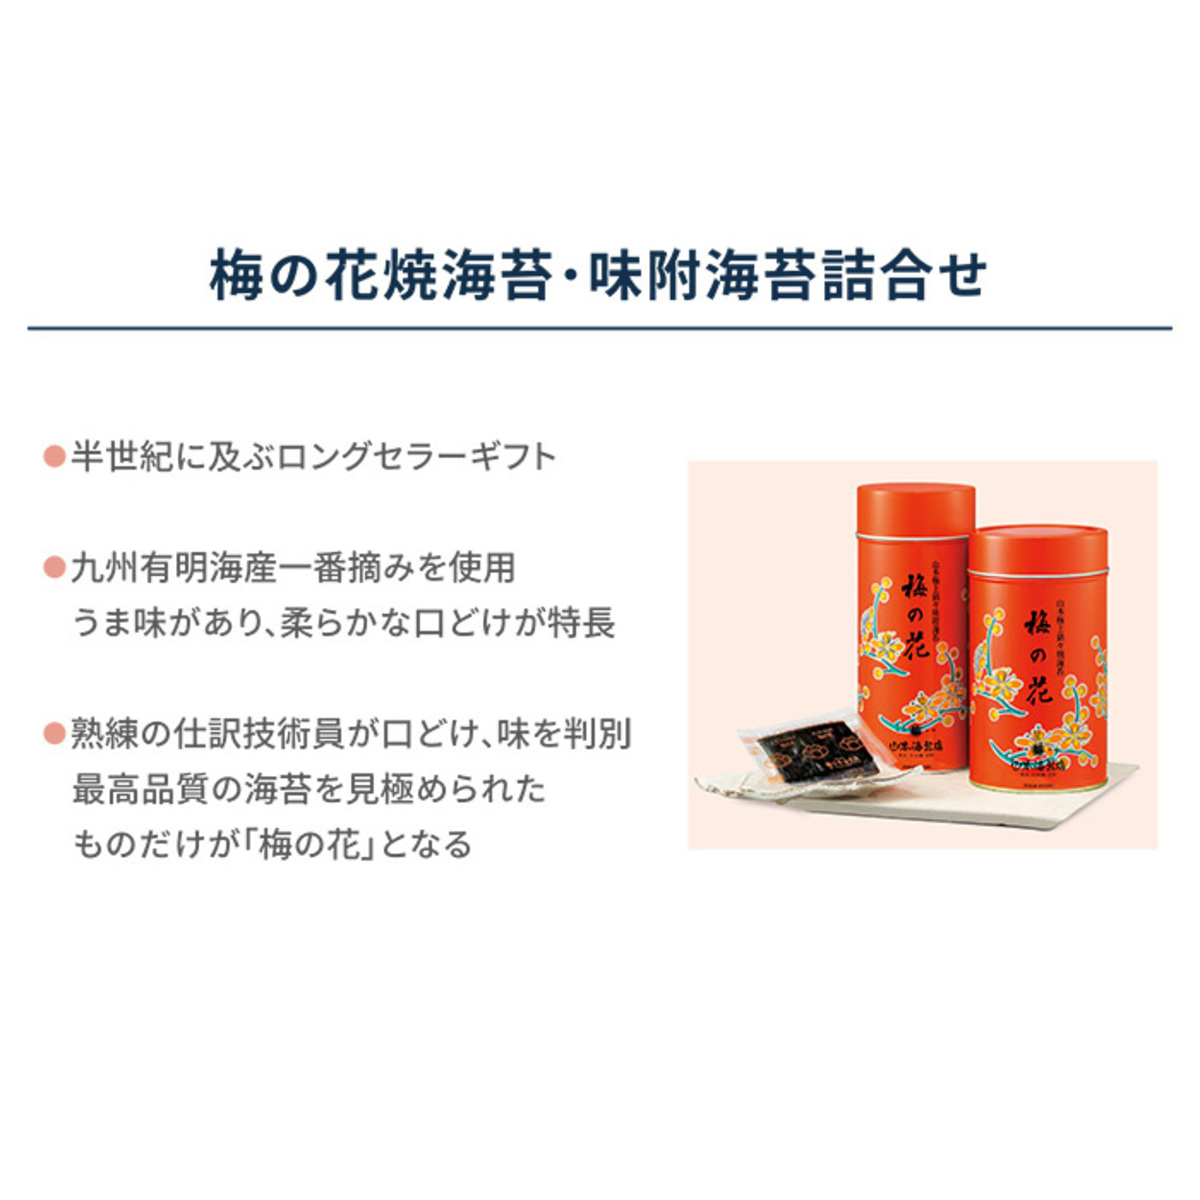 山本海苔店 「梅の花」中缶詰合せ エコバッグ付 山本海苔店 - QVC.jp